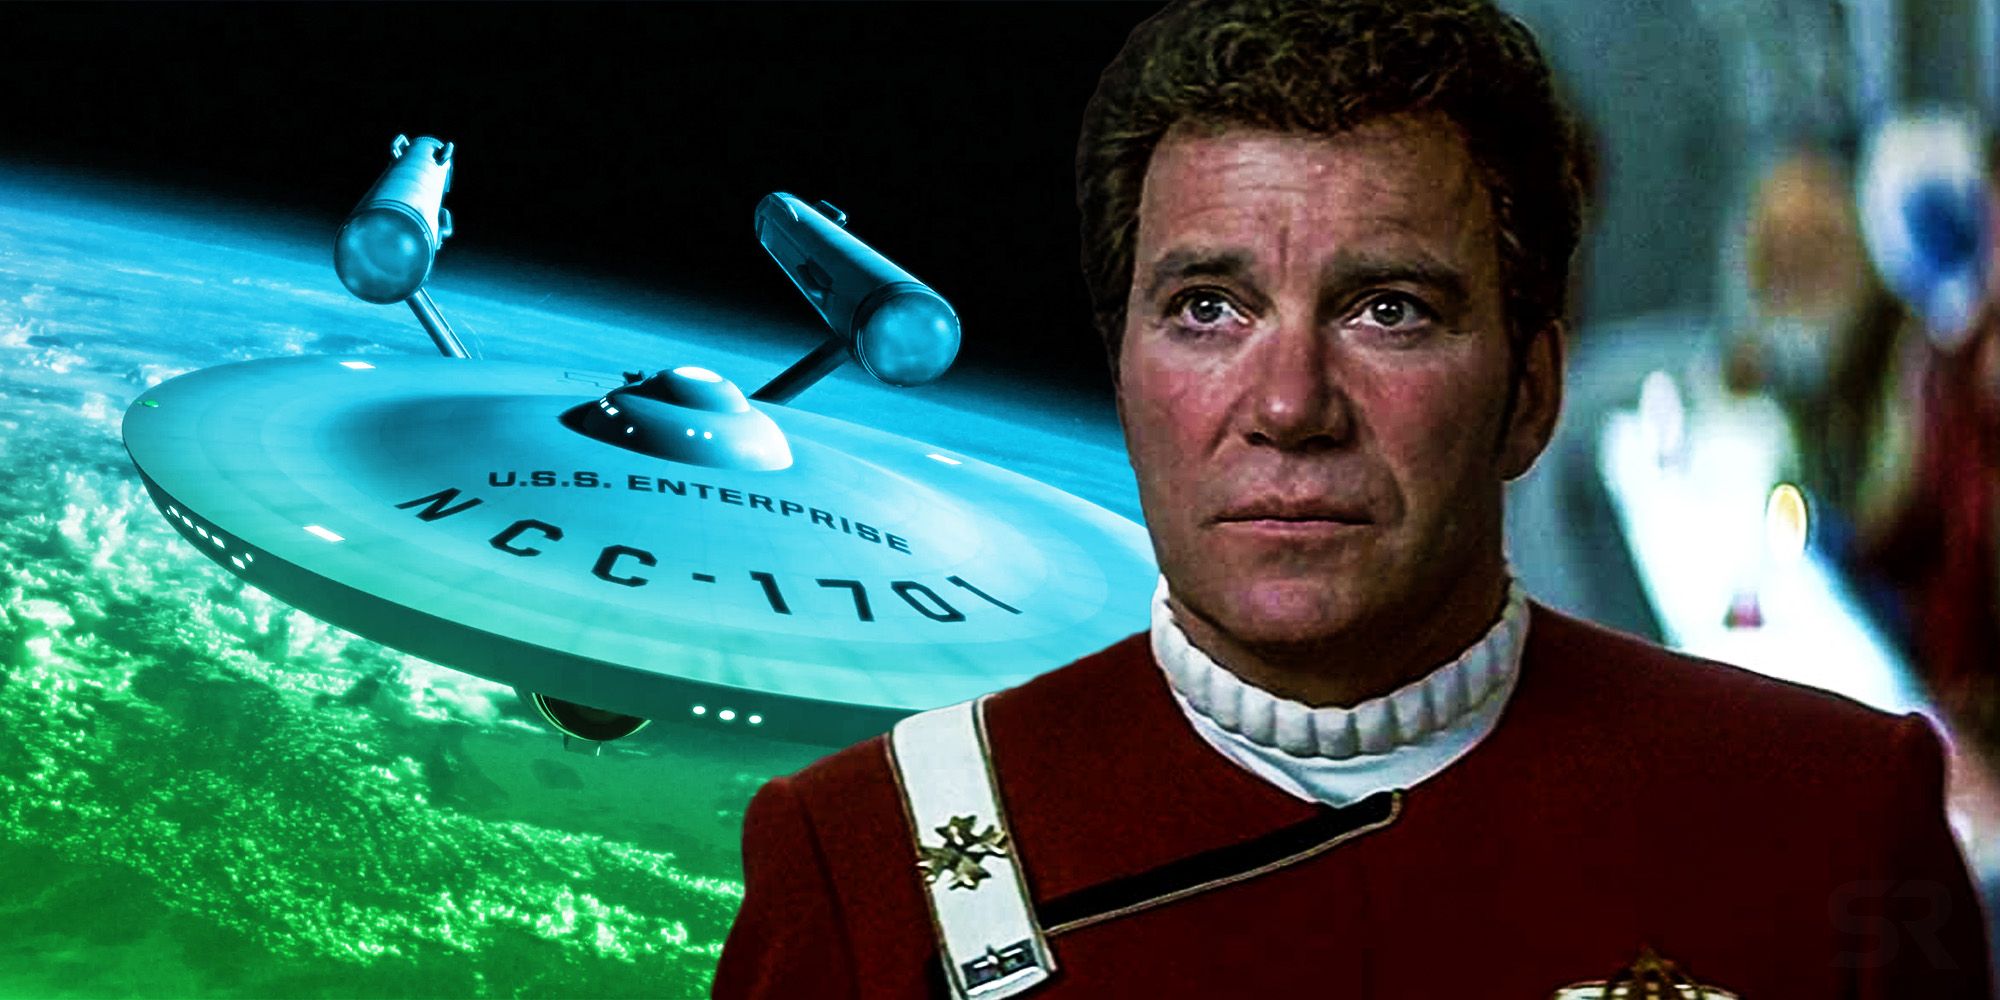 Captain Kirk Star trek 4 the enterprise